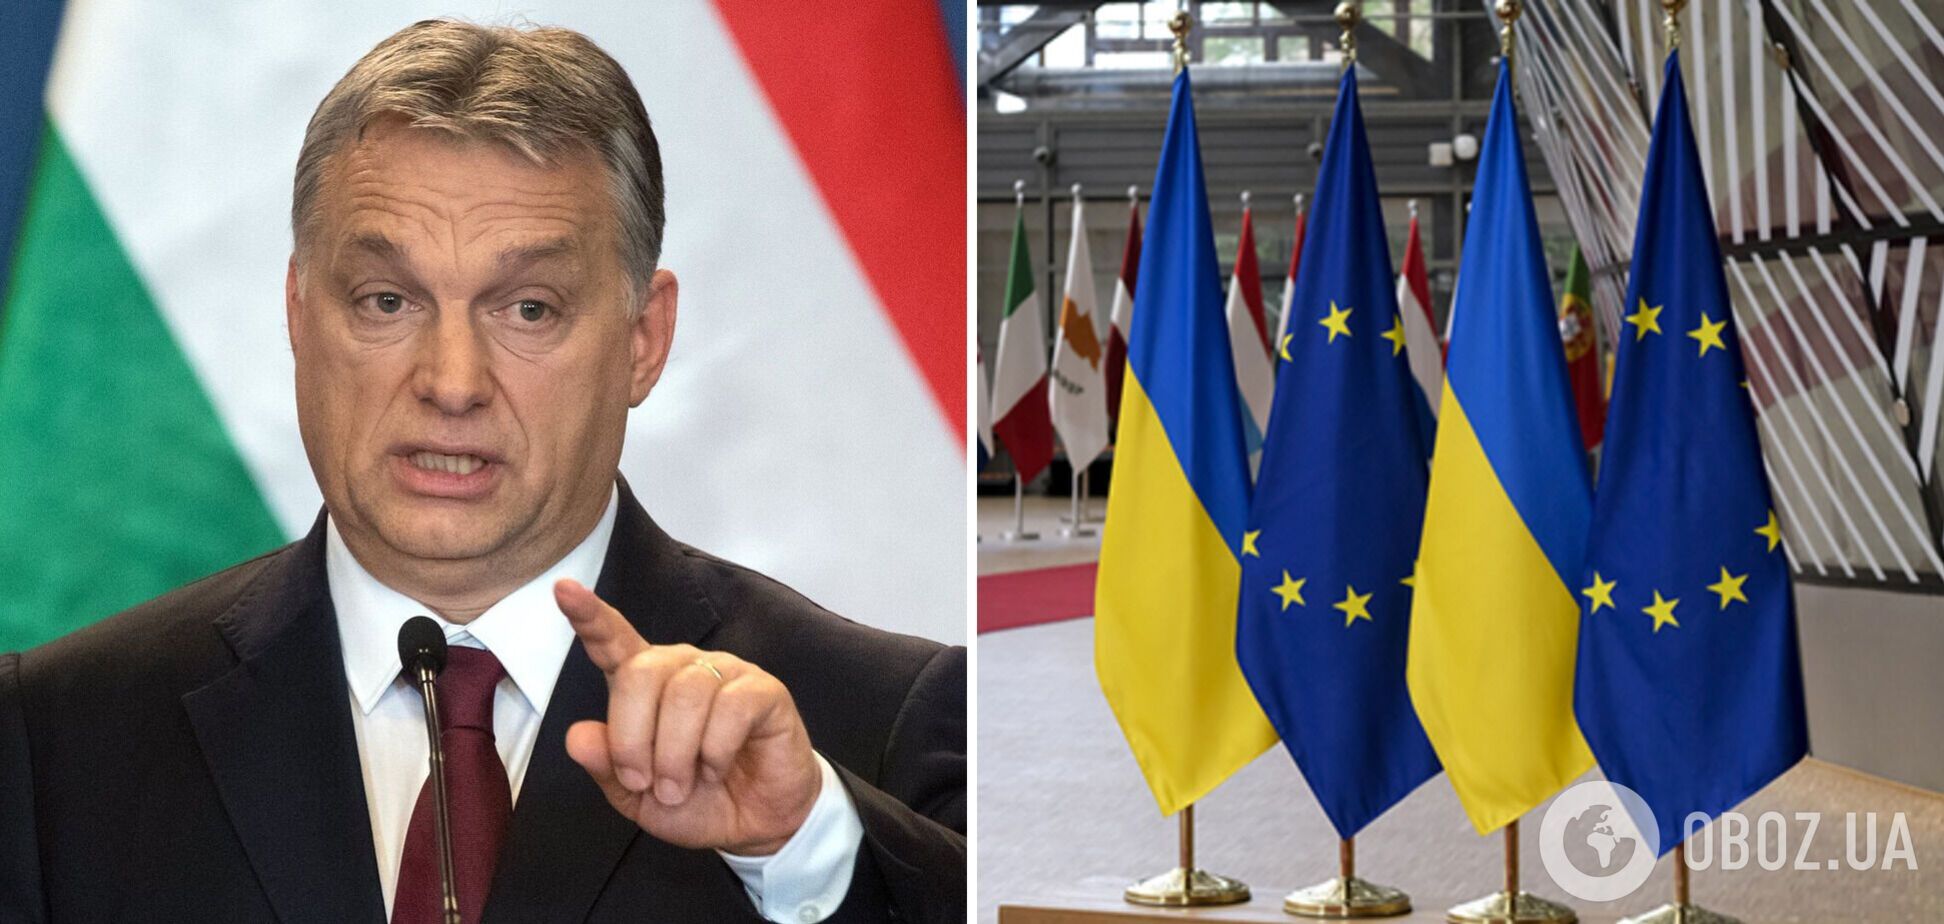 Друг Путіна Орбан наближає ЄС до 'прірви' через негативне ставлення до України – Politico 